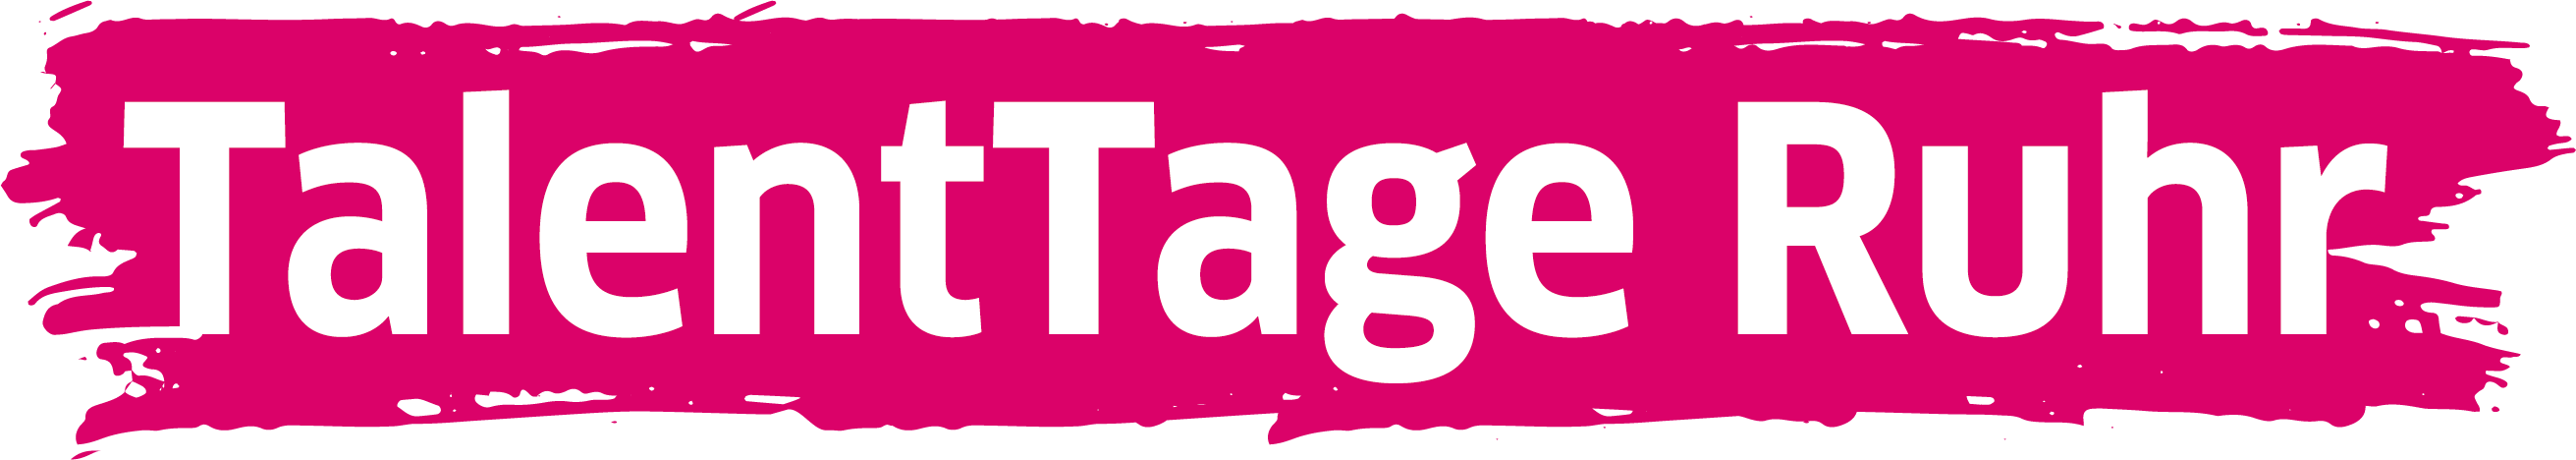 Talenttage Ruhr Logo einzeilig